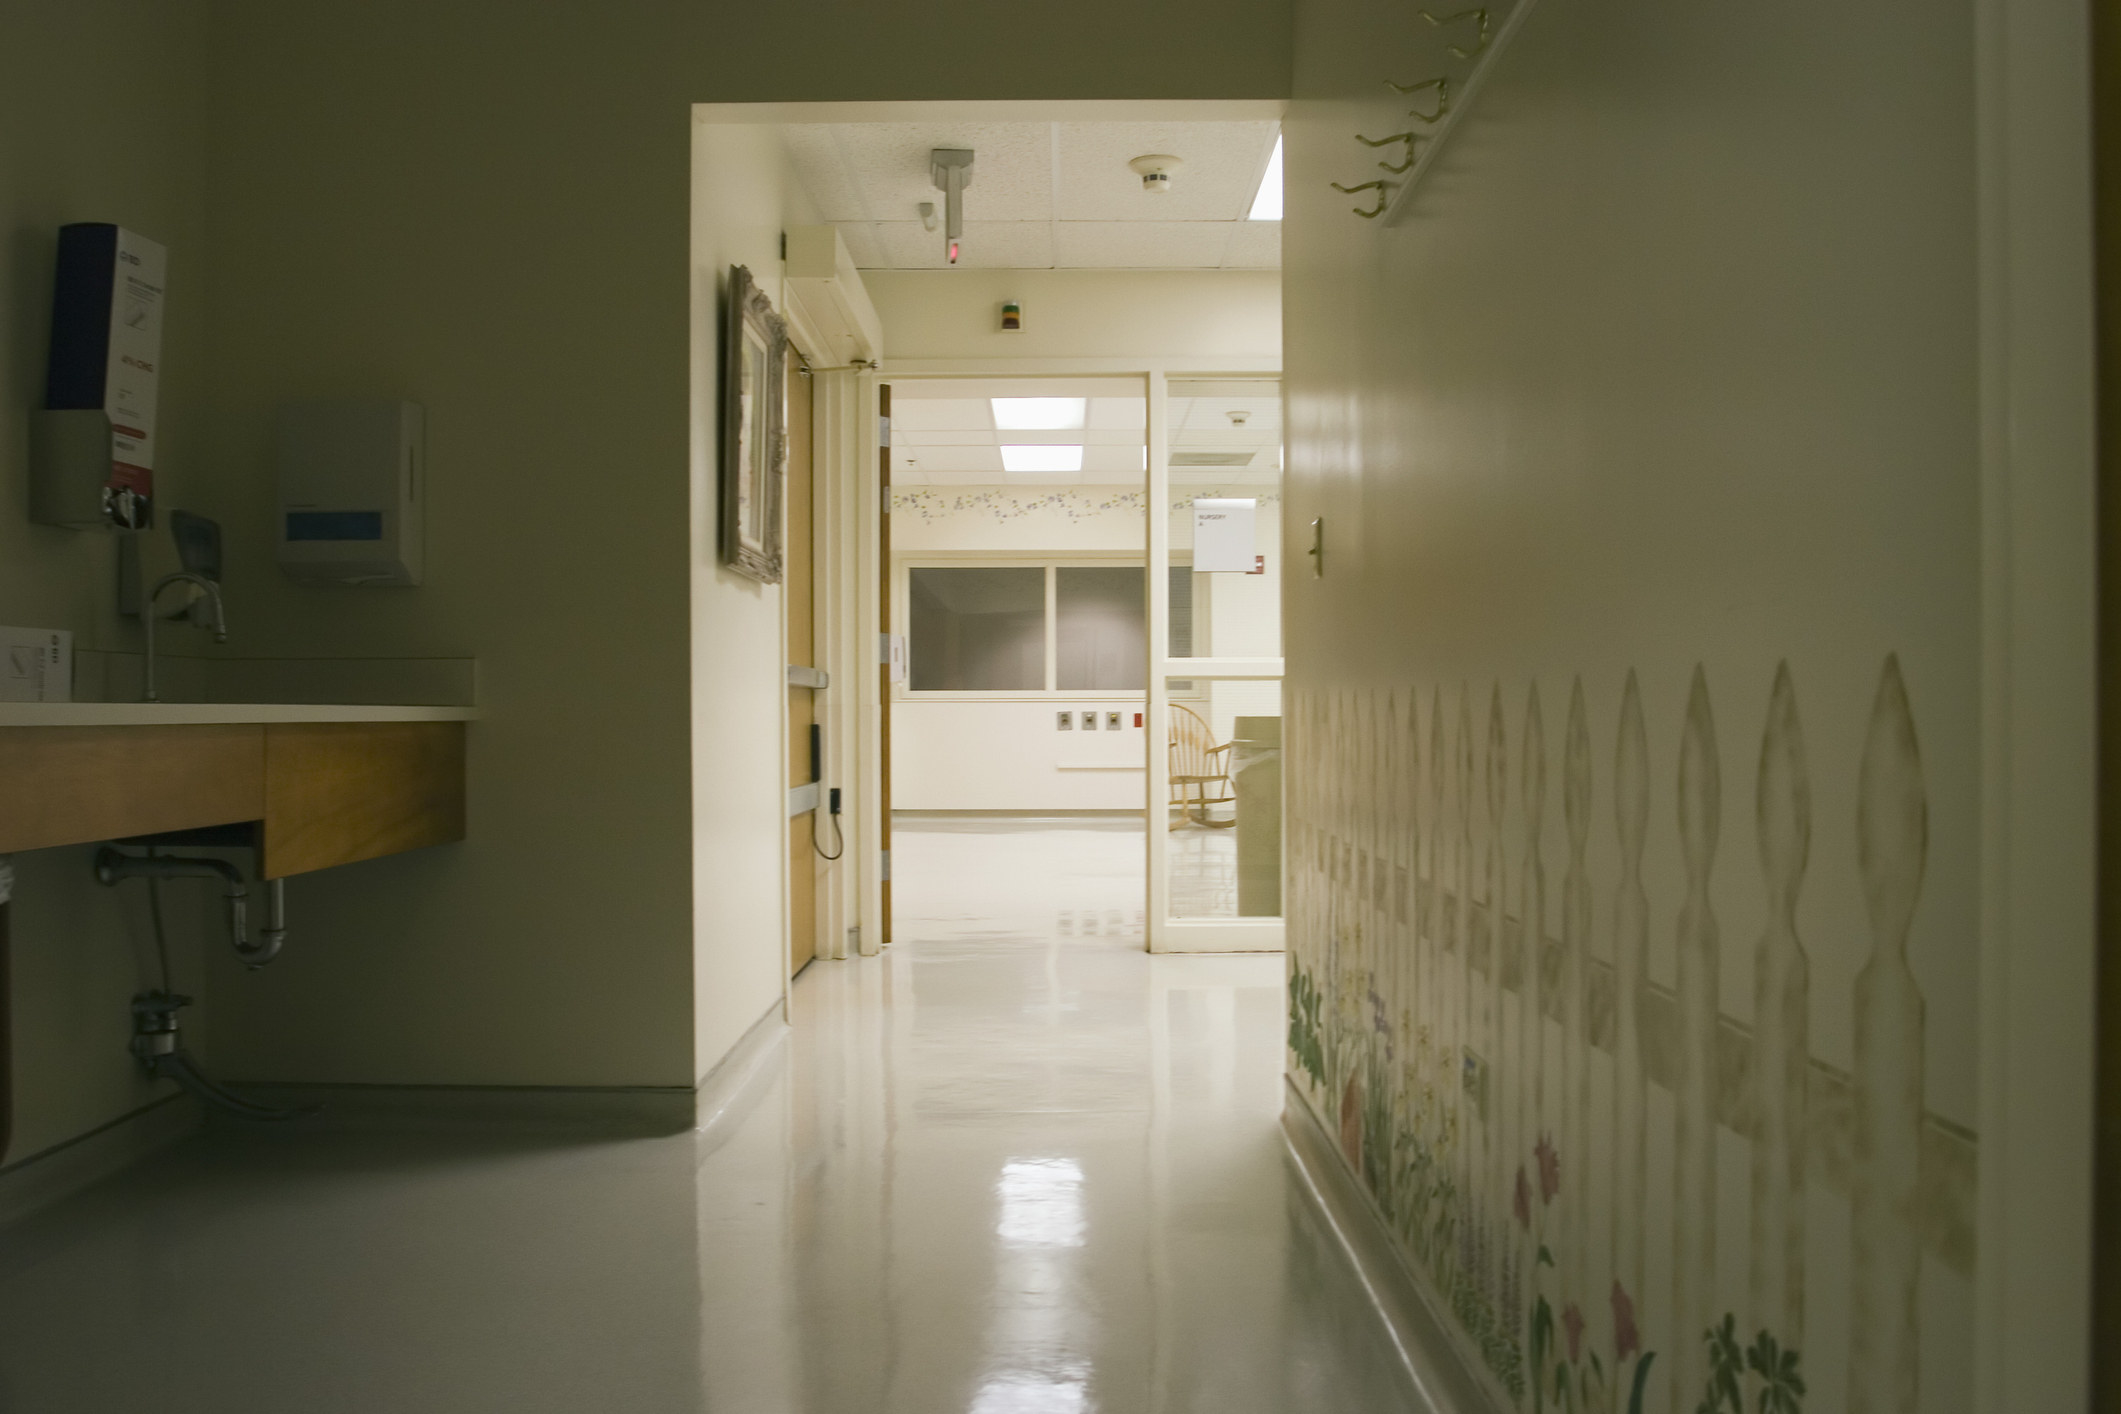 A dark hospital hallway